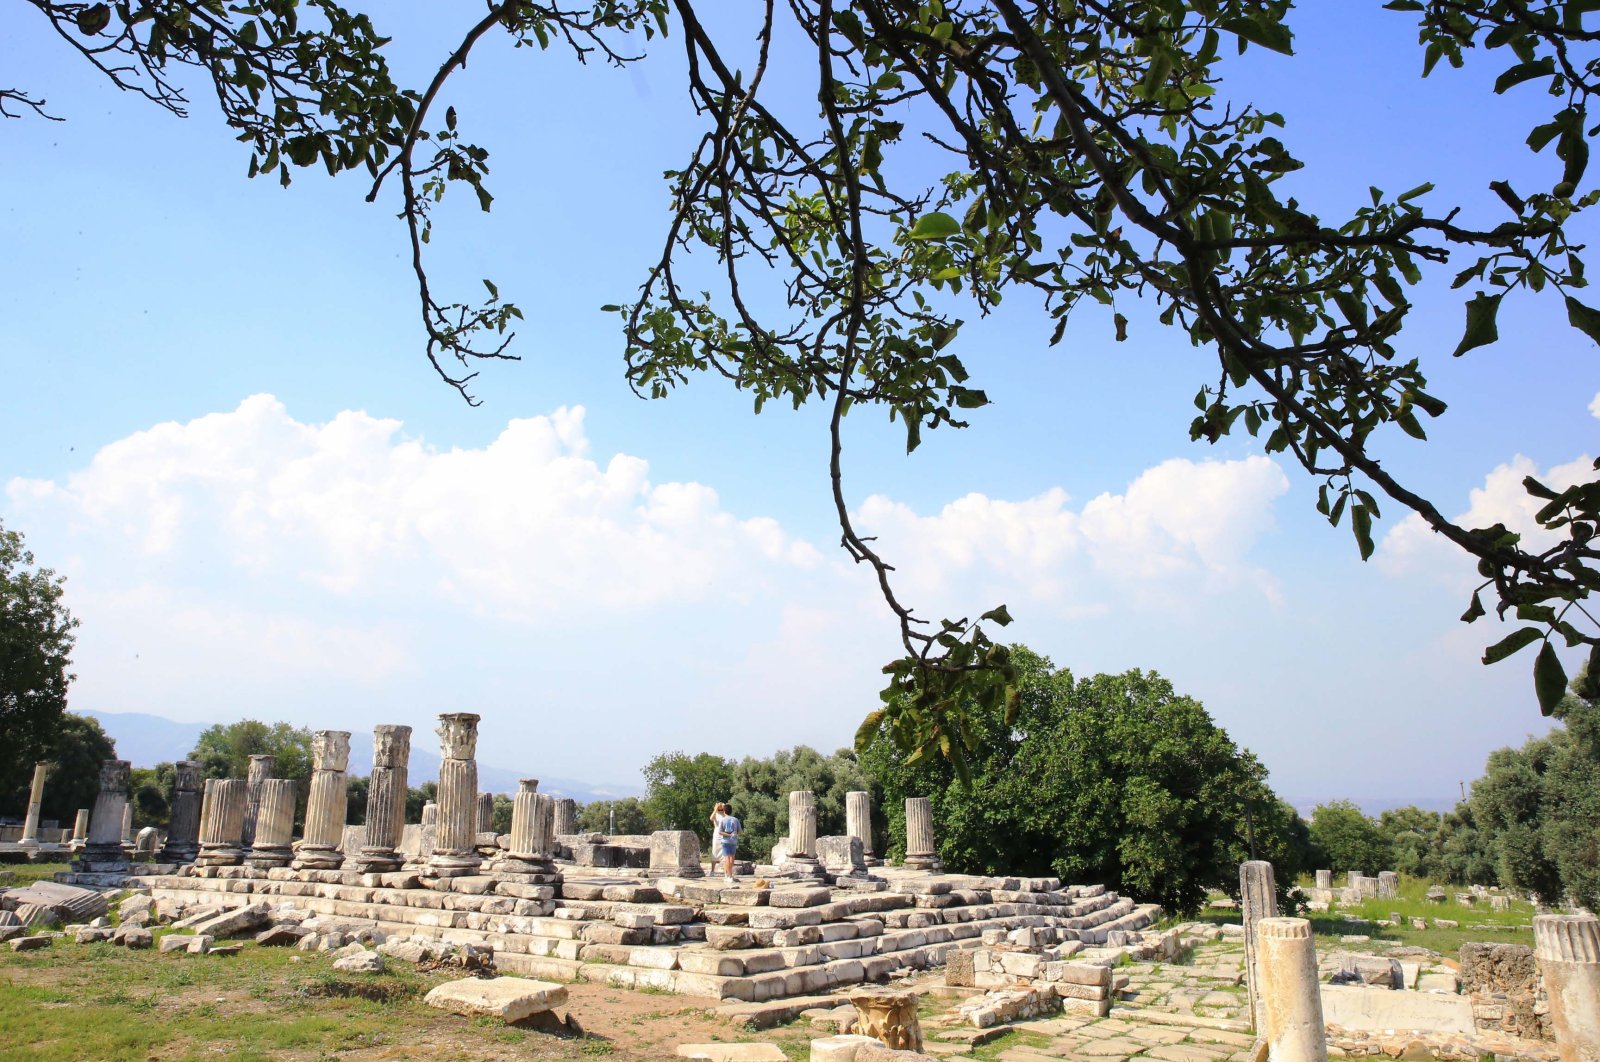 Jejak gempa kuno terungkap di situs bersejarah Türkiye berusia 3.000 tahun